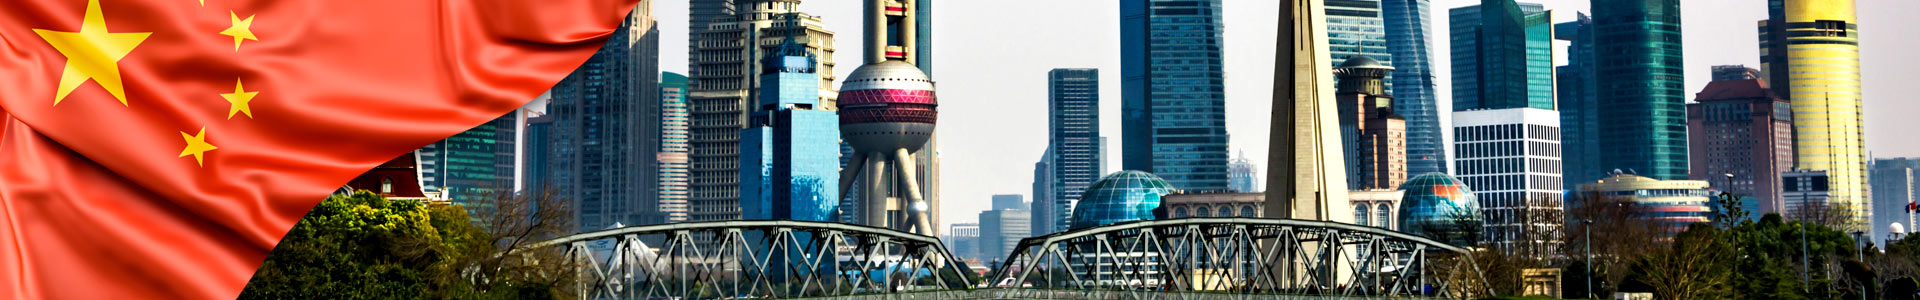 Bandera de China y foto del lorizonte de la ciudad de Shanghai